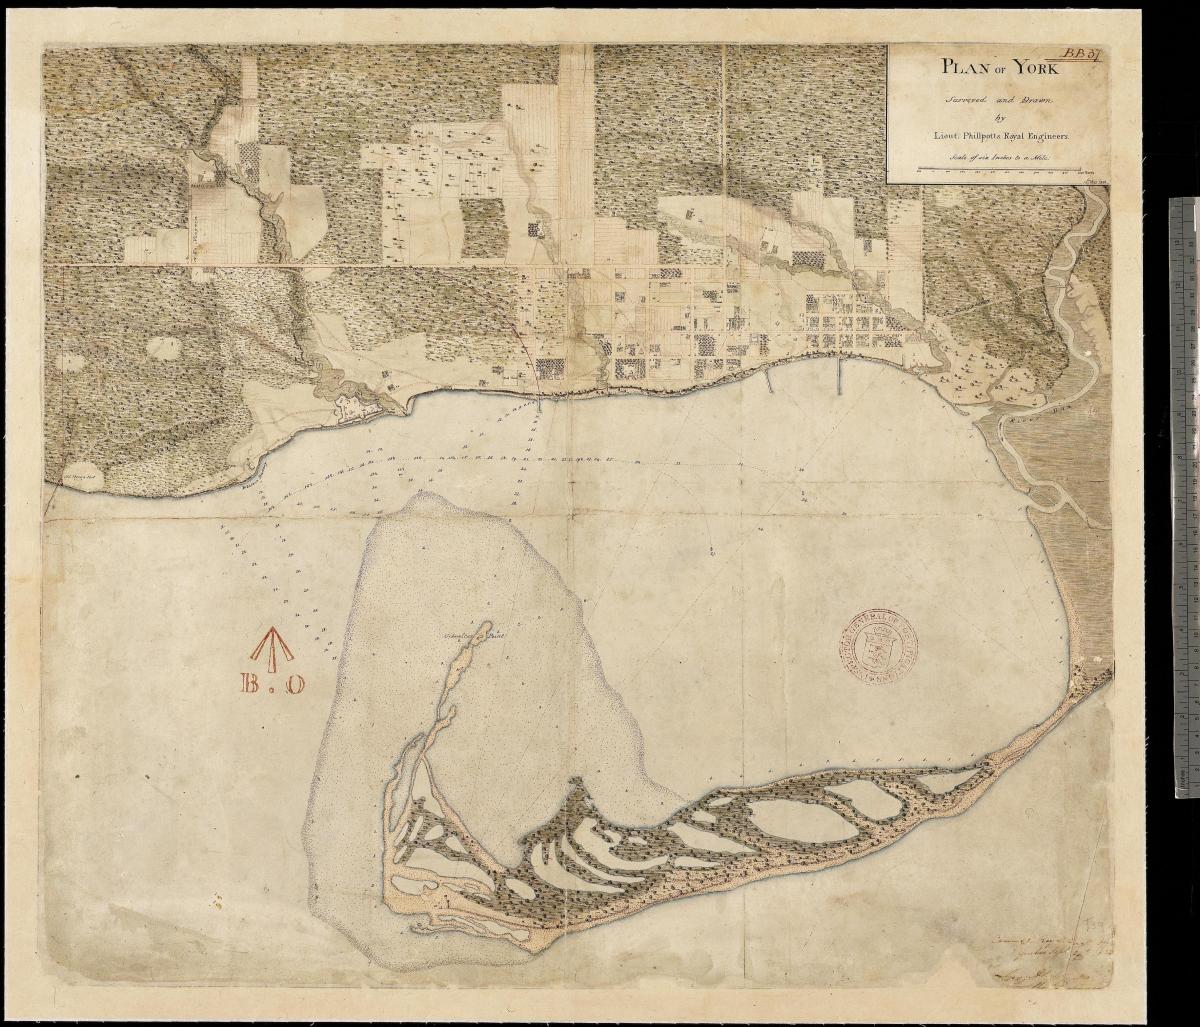 La mappa della terra di York, Toronto, prima centure 1787-1884